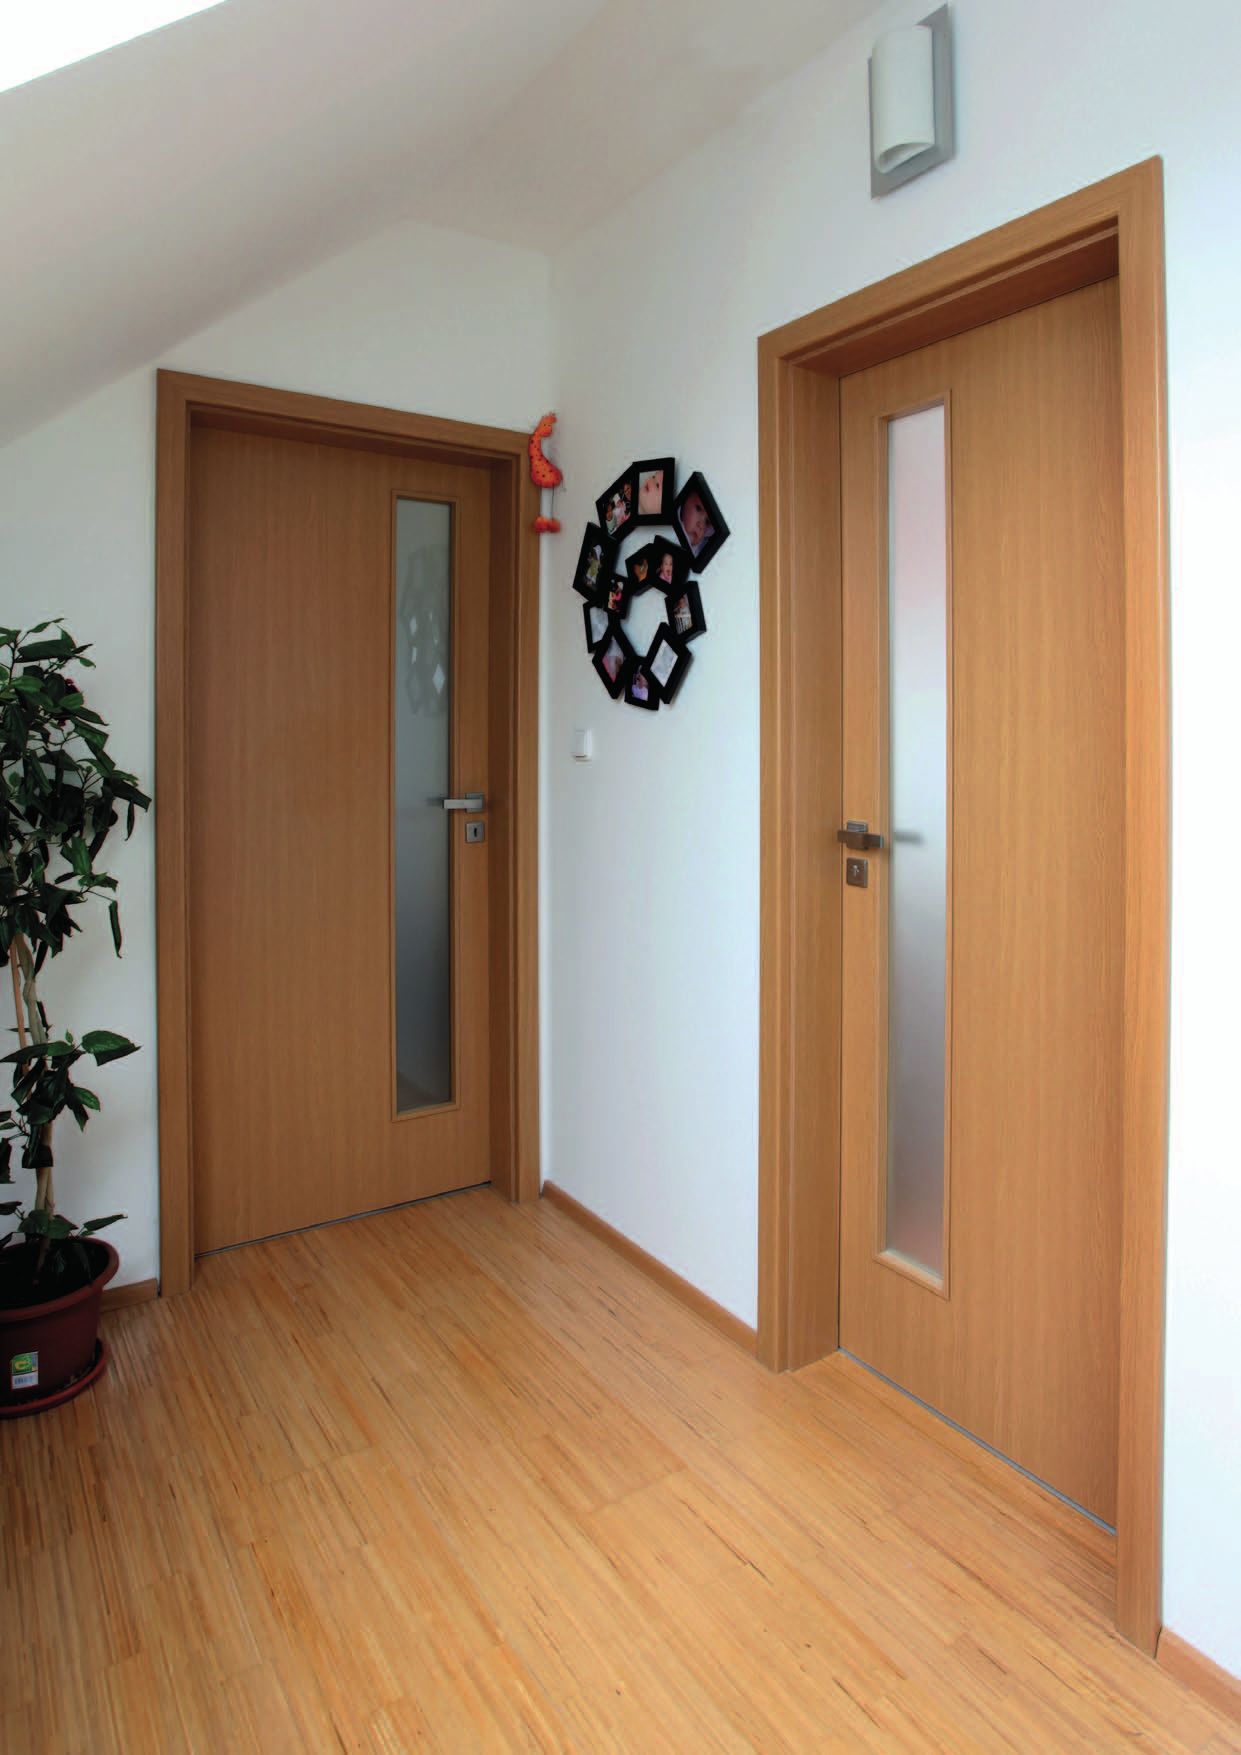 Interiérové dveře interiérové dveře Standard dveře Novaline dveře Rustik dveře posuvné dveře bezpečnostní dveře s olověnou vložkou dveře protipožární, protihlukové, protikouřové dveře skládací